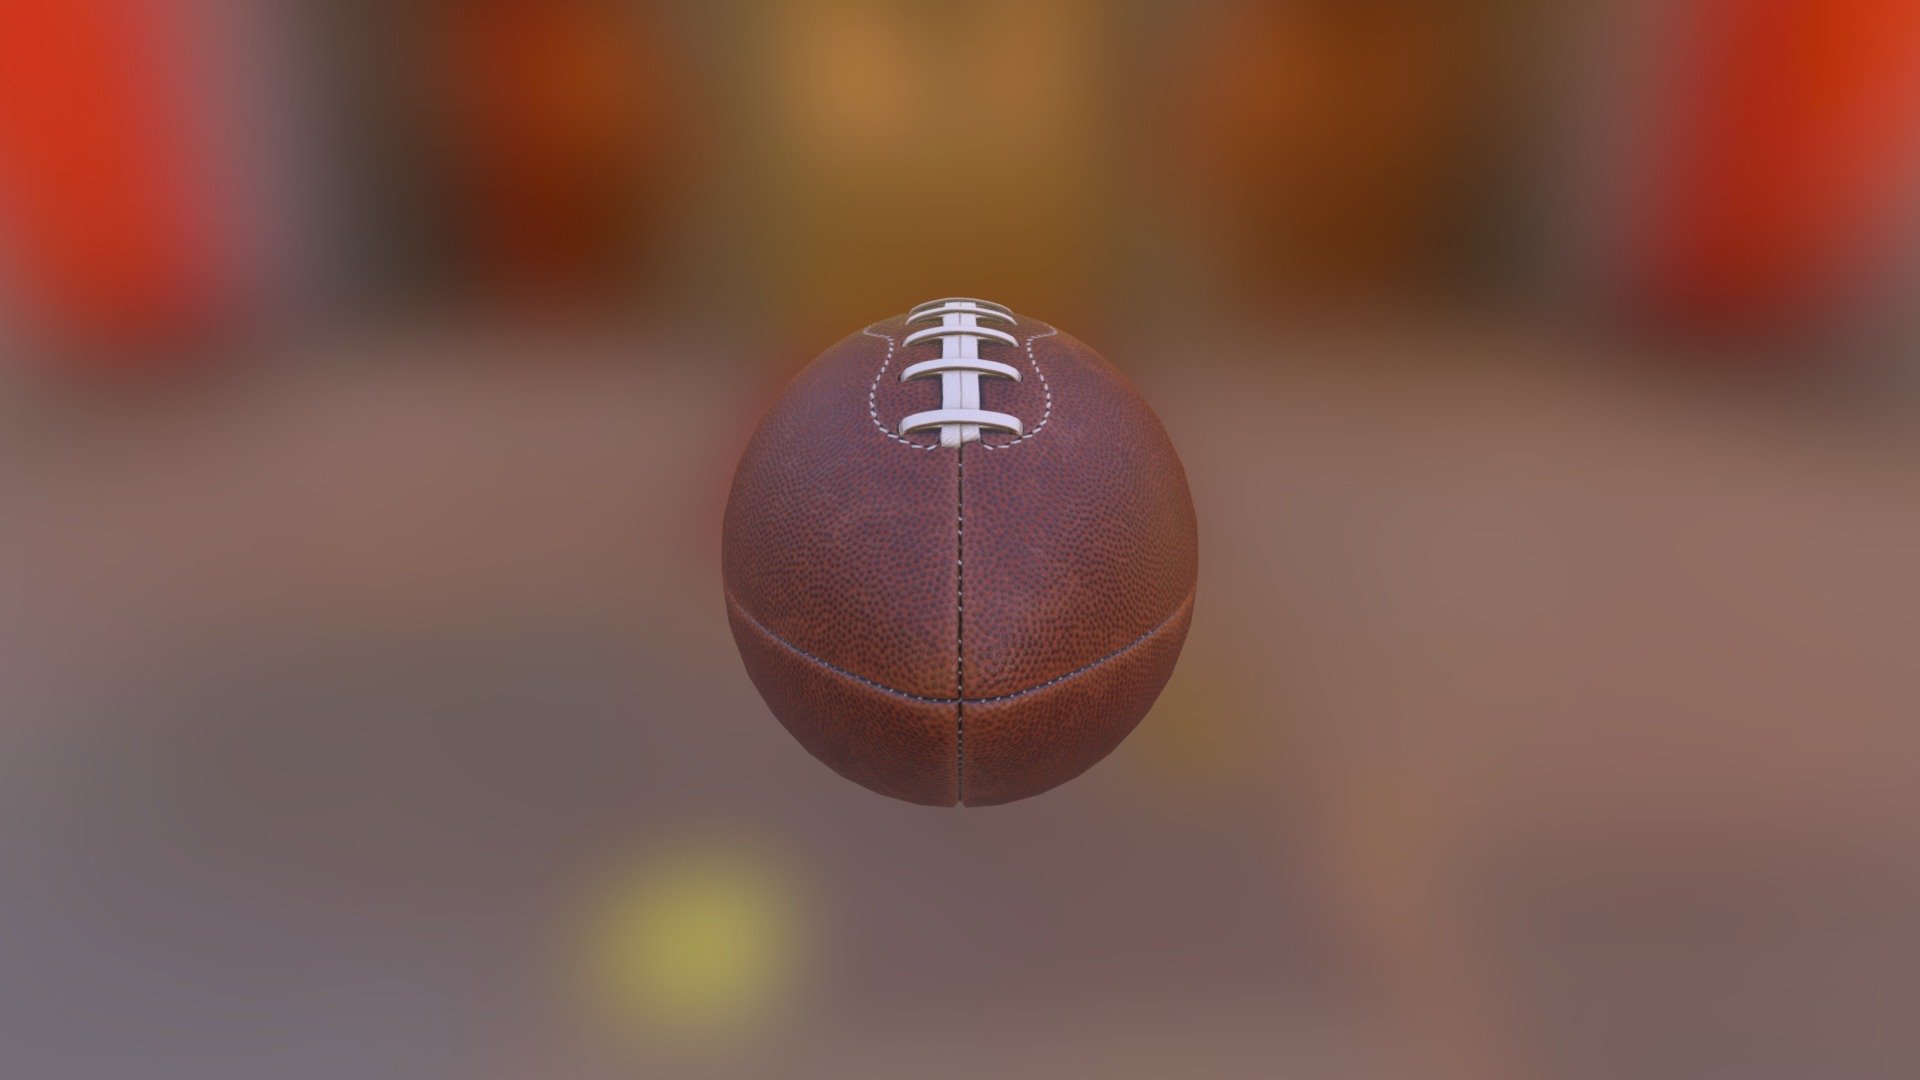 Test - Football - 3D model by AndreiSE 3d model